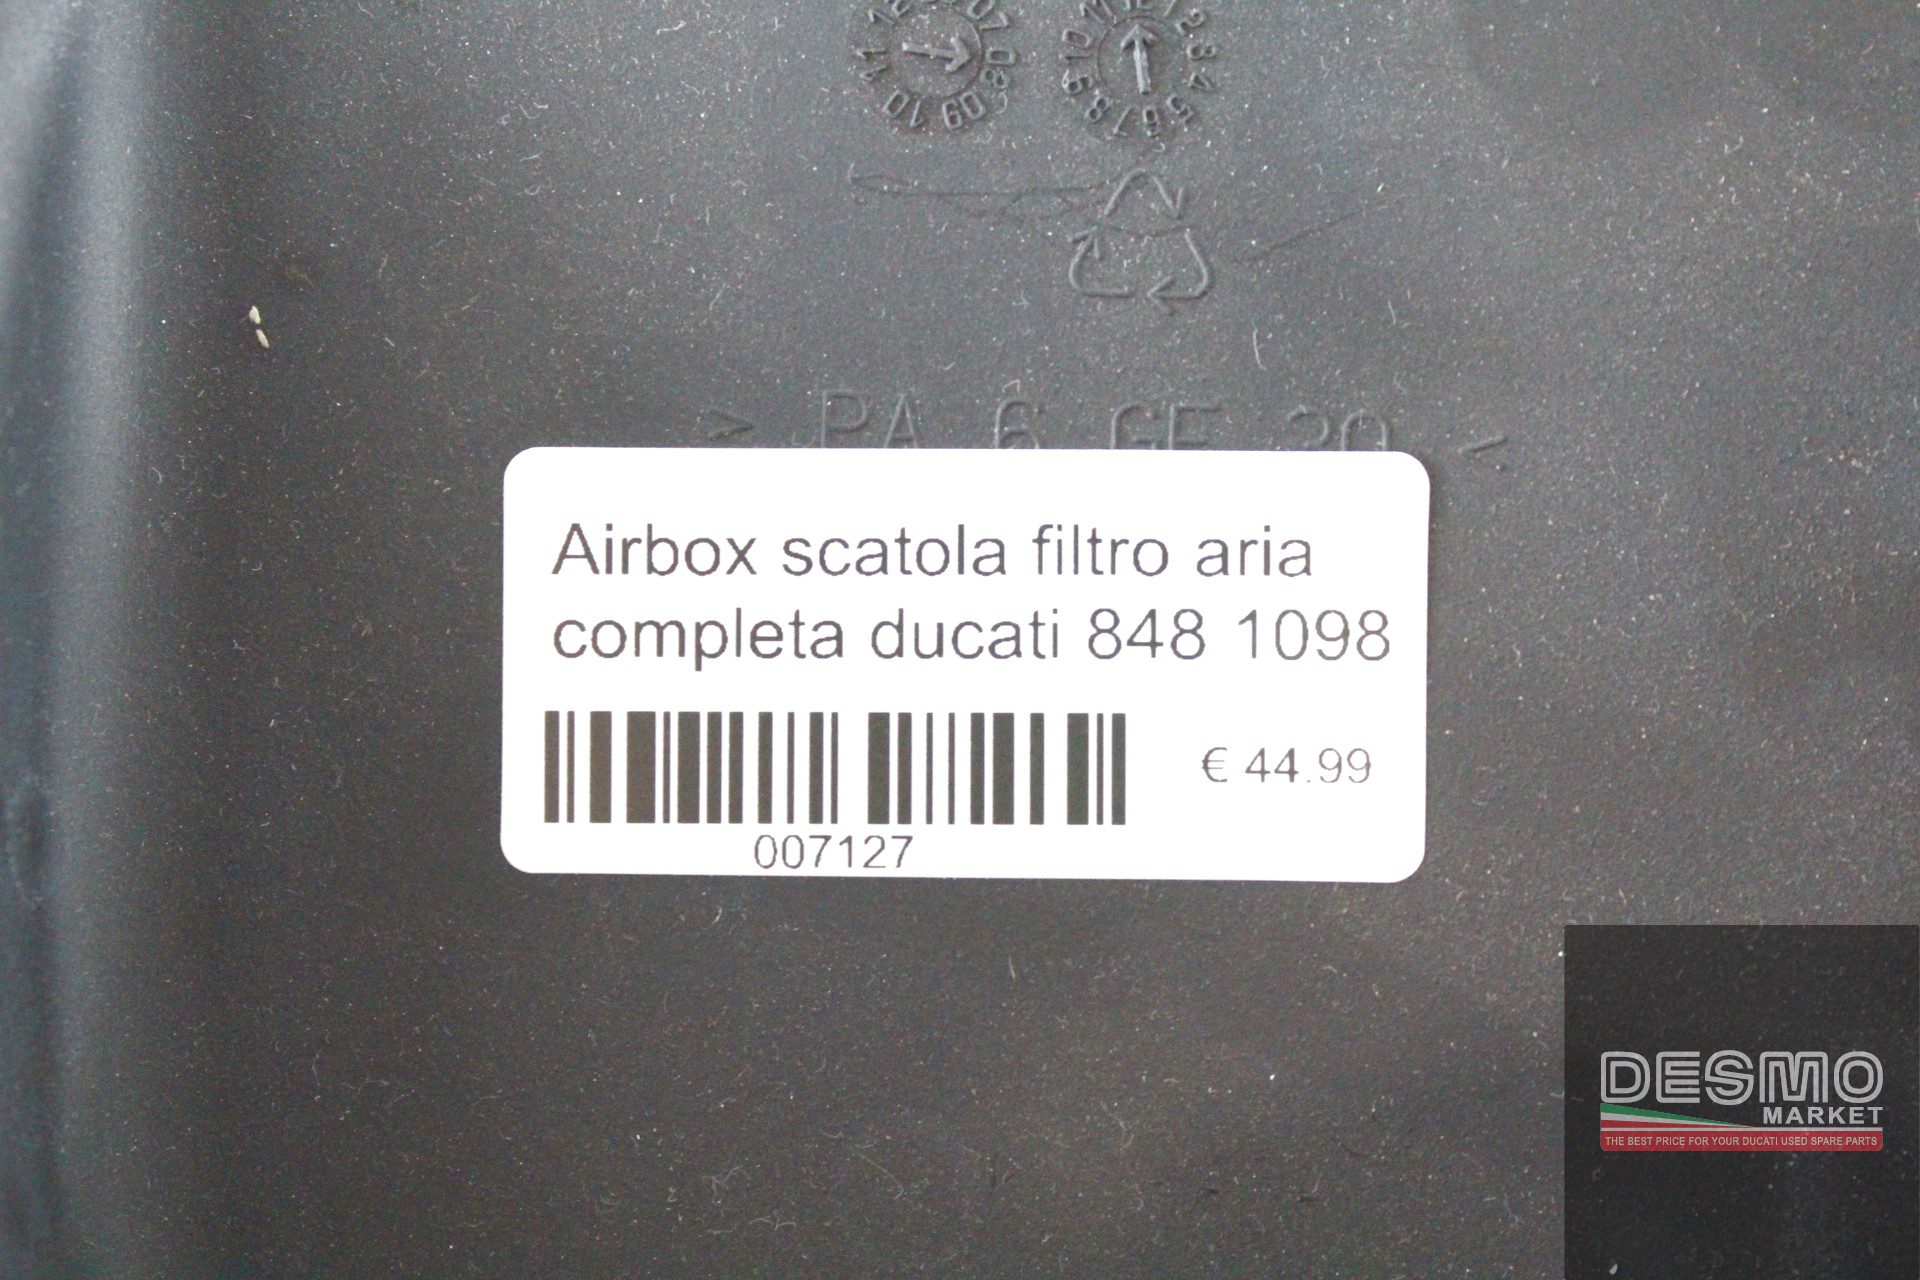 Airbox scatola filtro aria completa ducati 848 1098